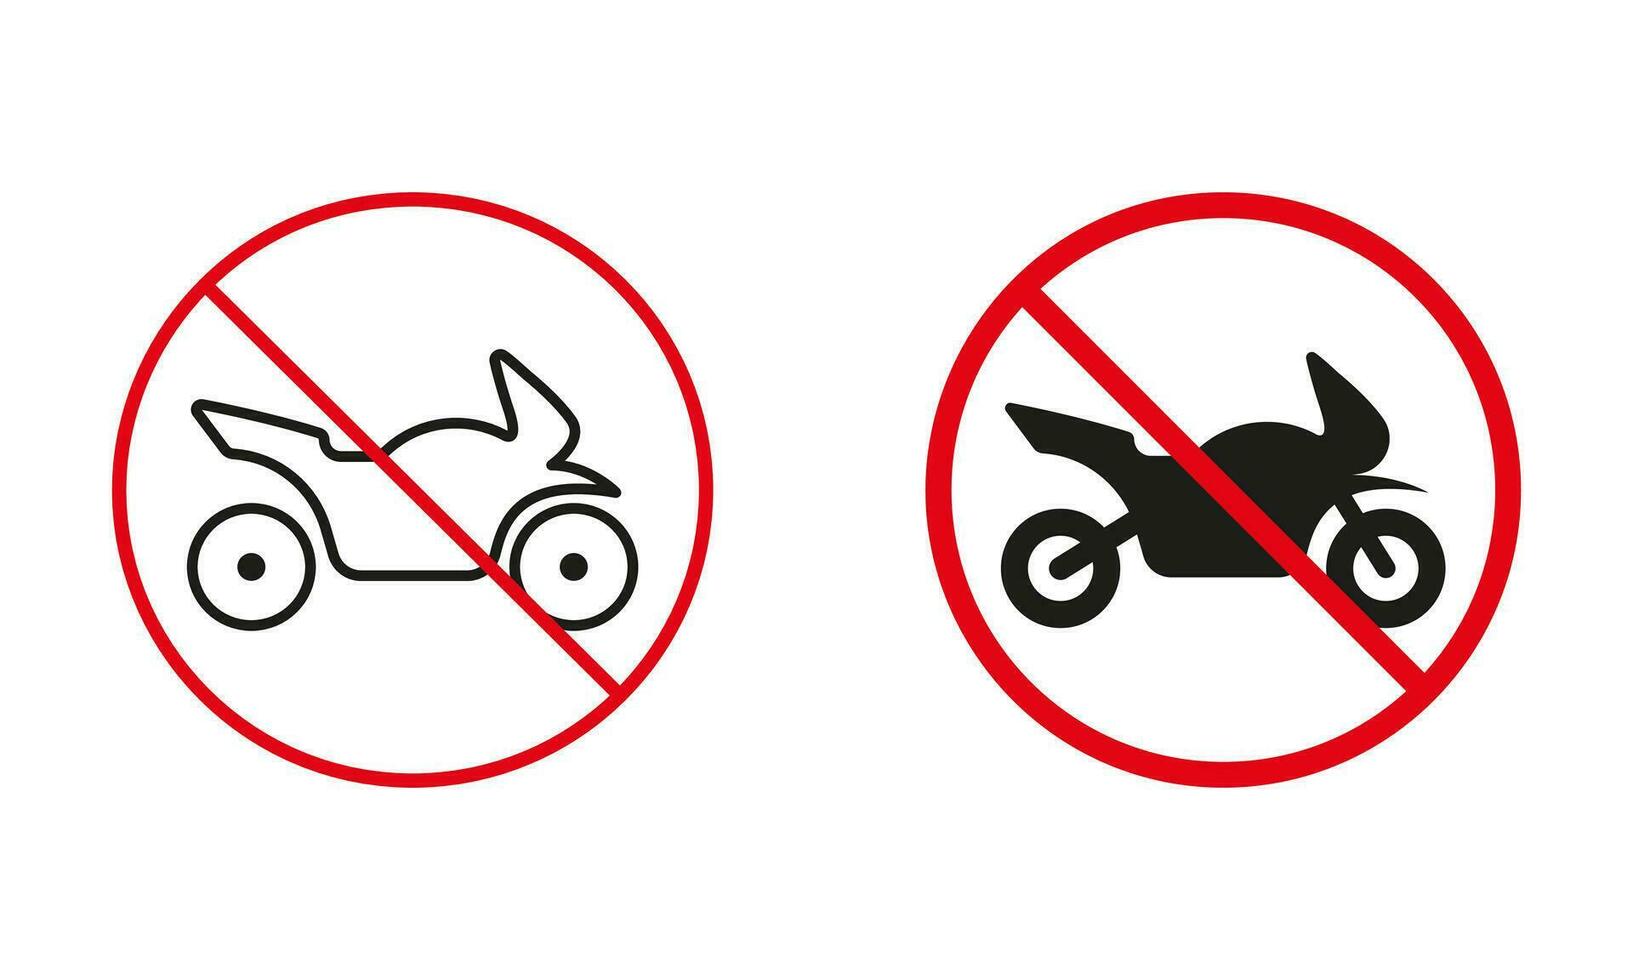 nicht Motorrad unterzeichnen. beschränkt Motorrad Parkplatz Zone. Fahrrad oder verbunden Fahrzeuge können nicht bestehen Kreis Symbol Satz. Beachtung verbieten der Verkehr rot unterzeichnen. isoliert Vektor Illustration.